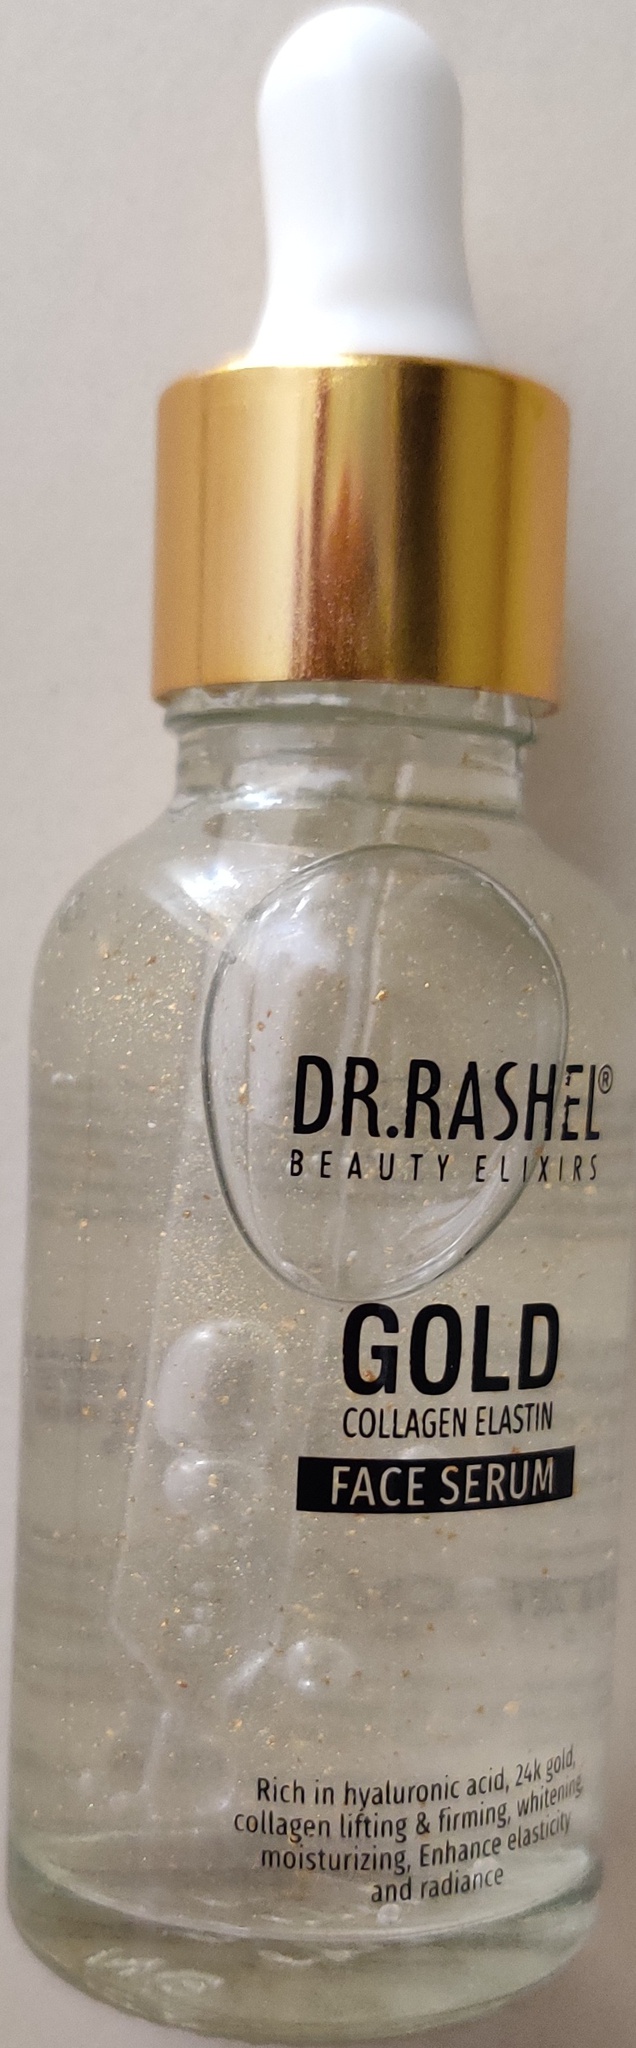 Dr.Rashel Gold Collagen Elastin Face Serum